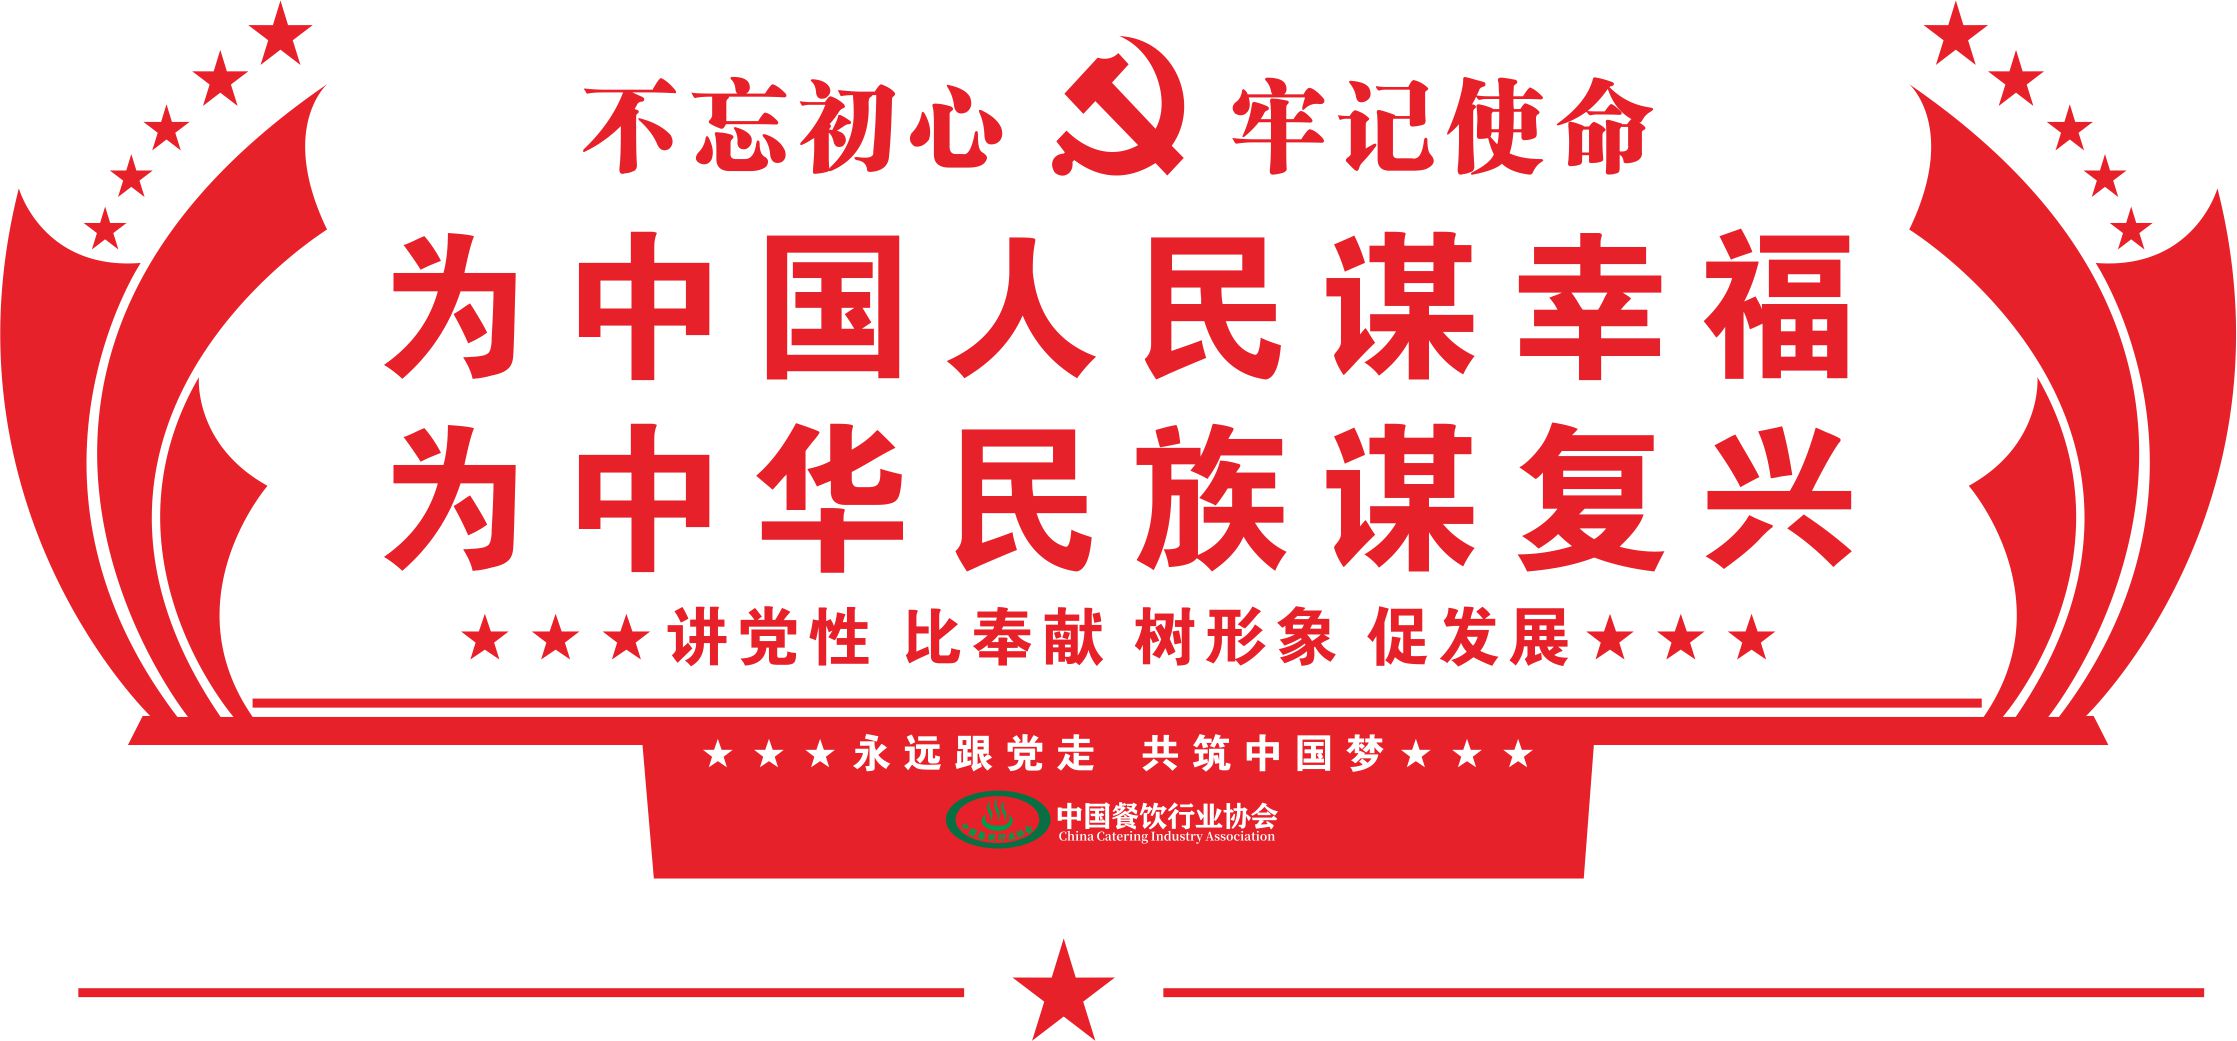 中国餐饮行业协会党建广告.jpg